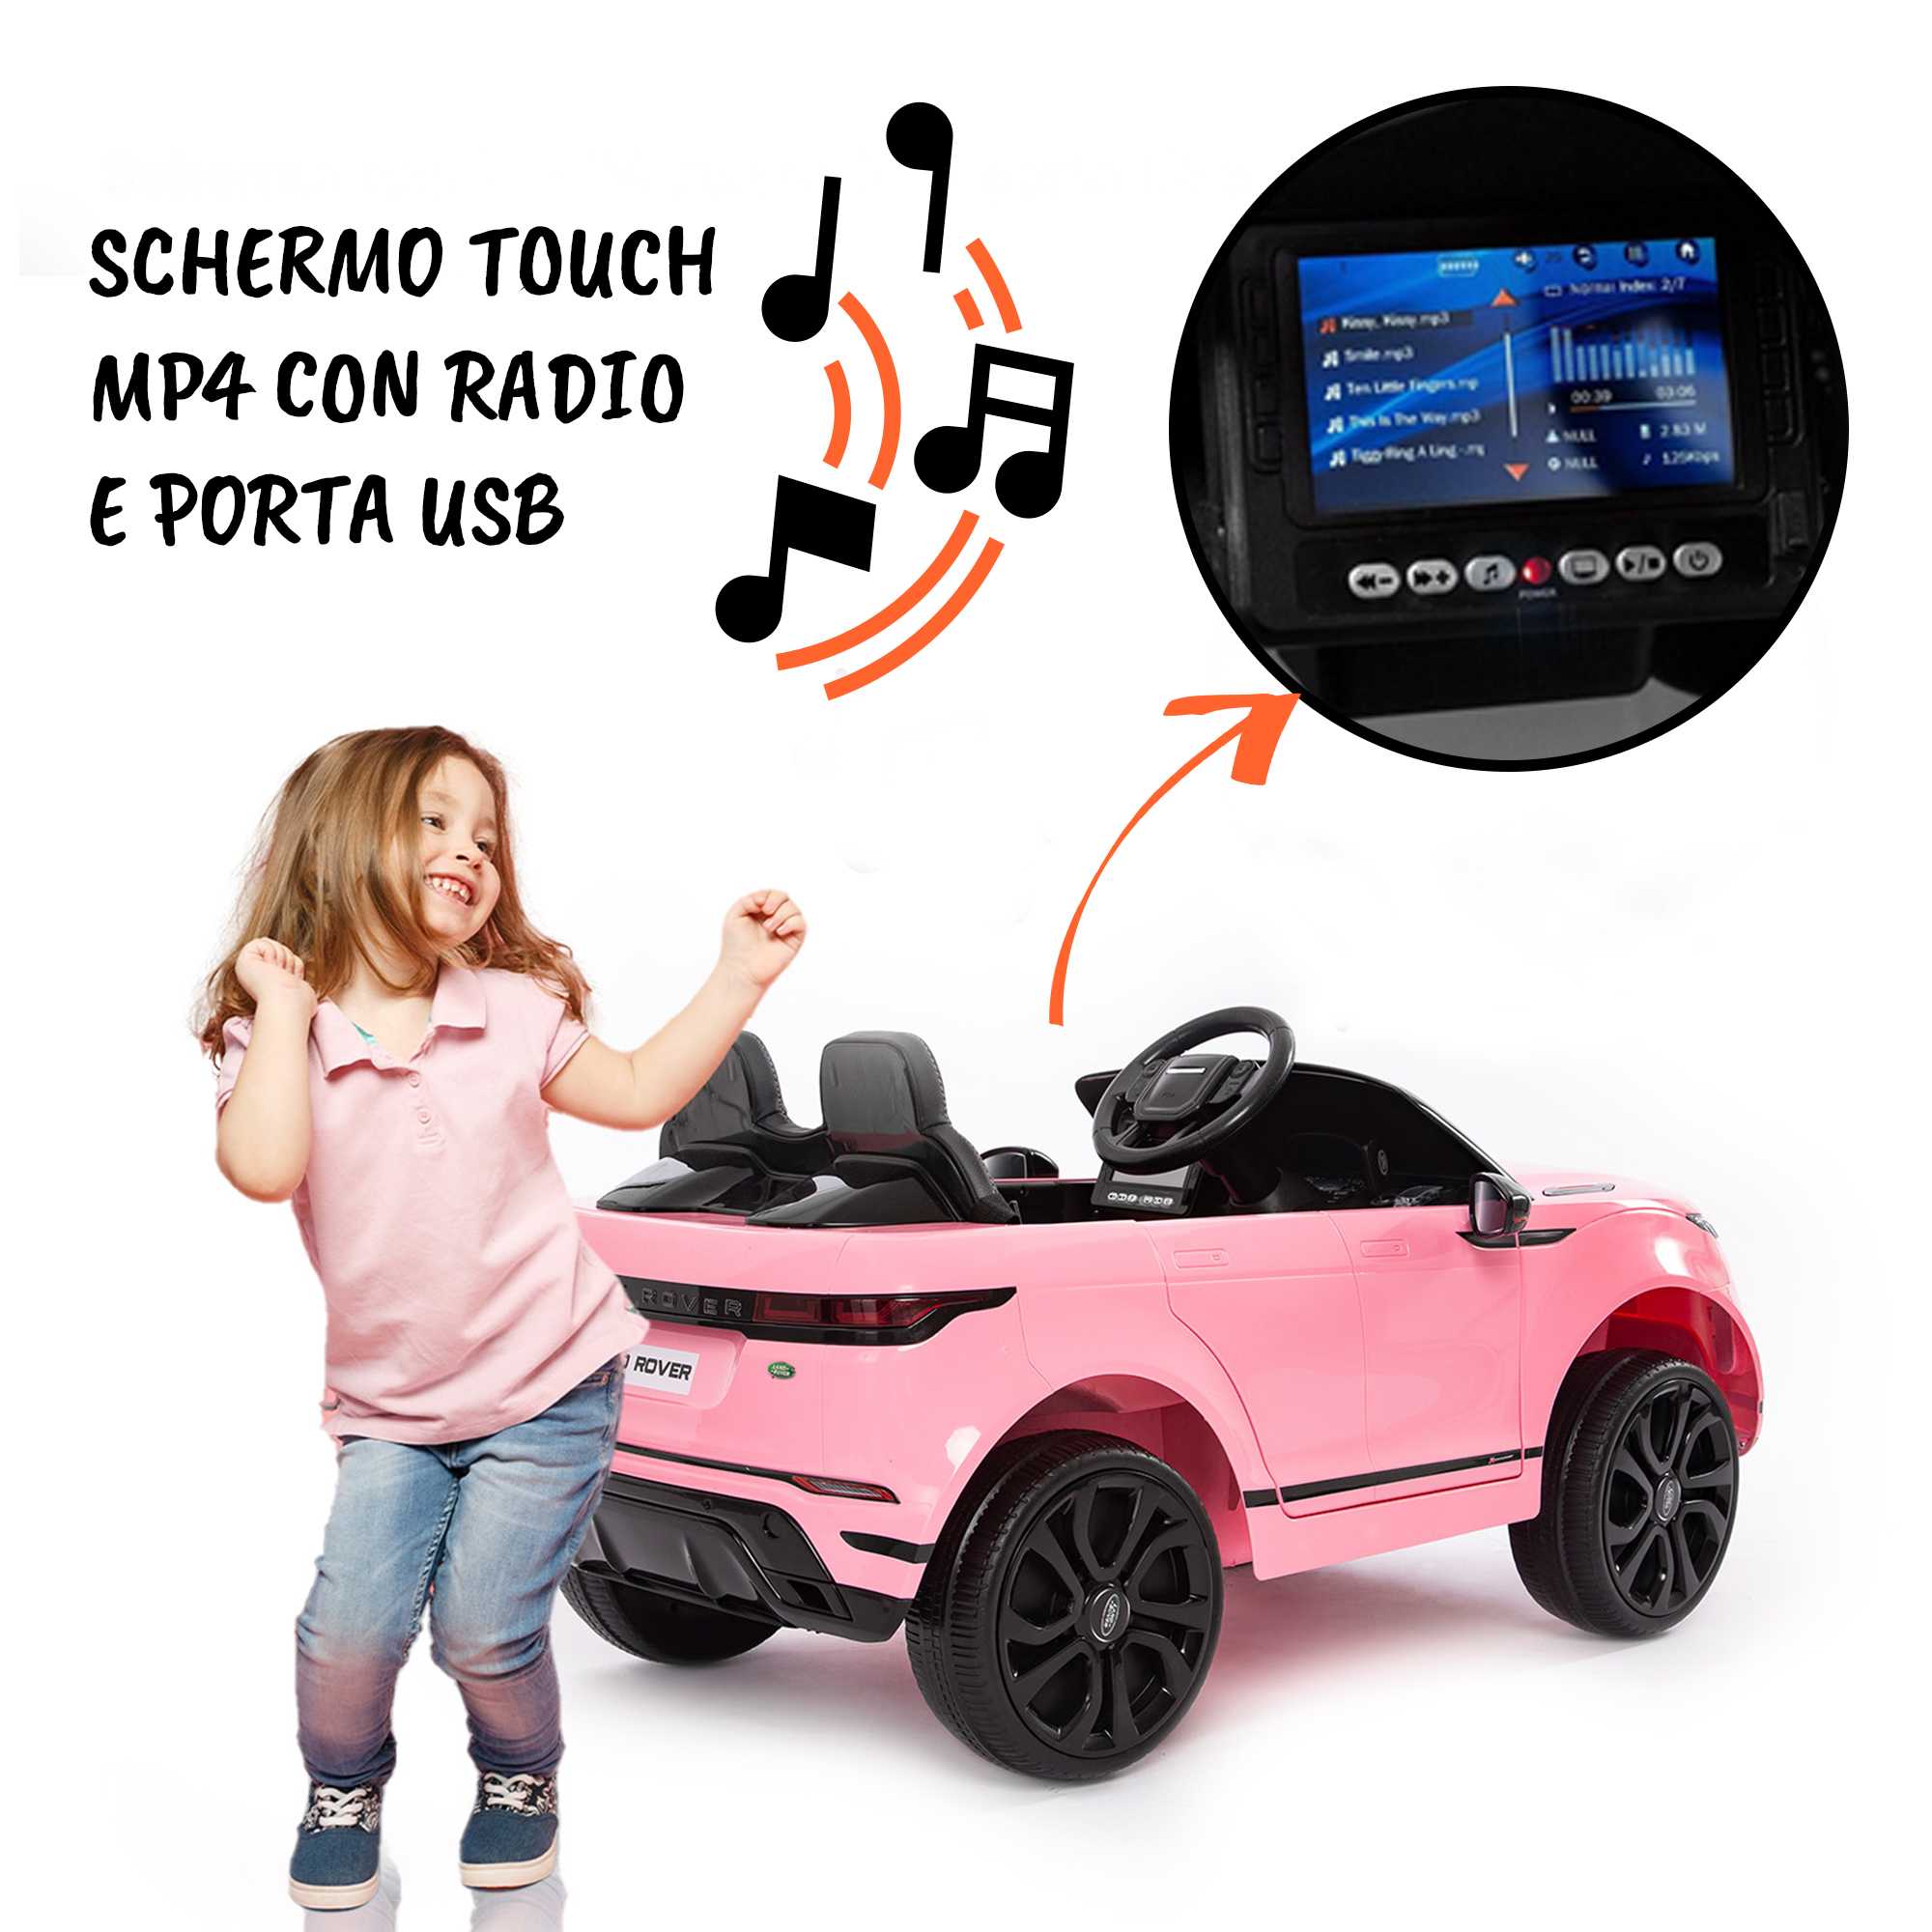 Schermo touch MP4 con radio e porta USB